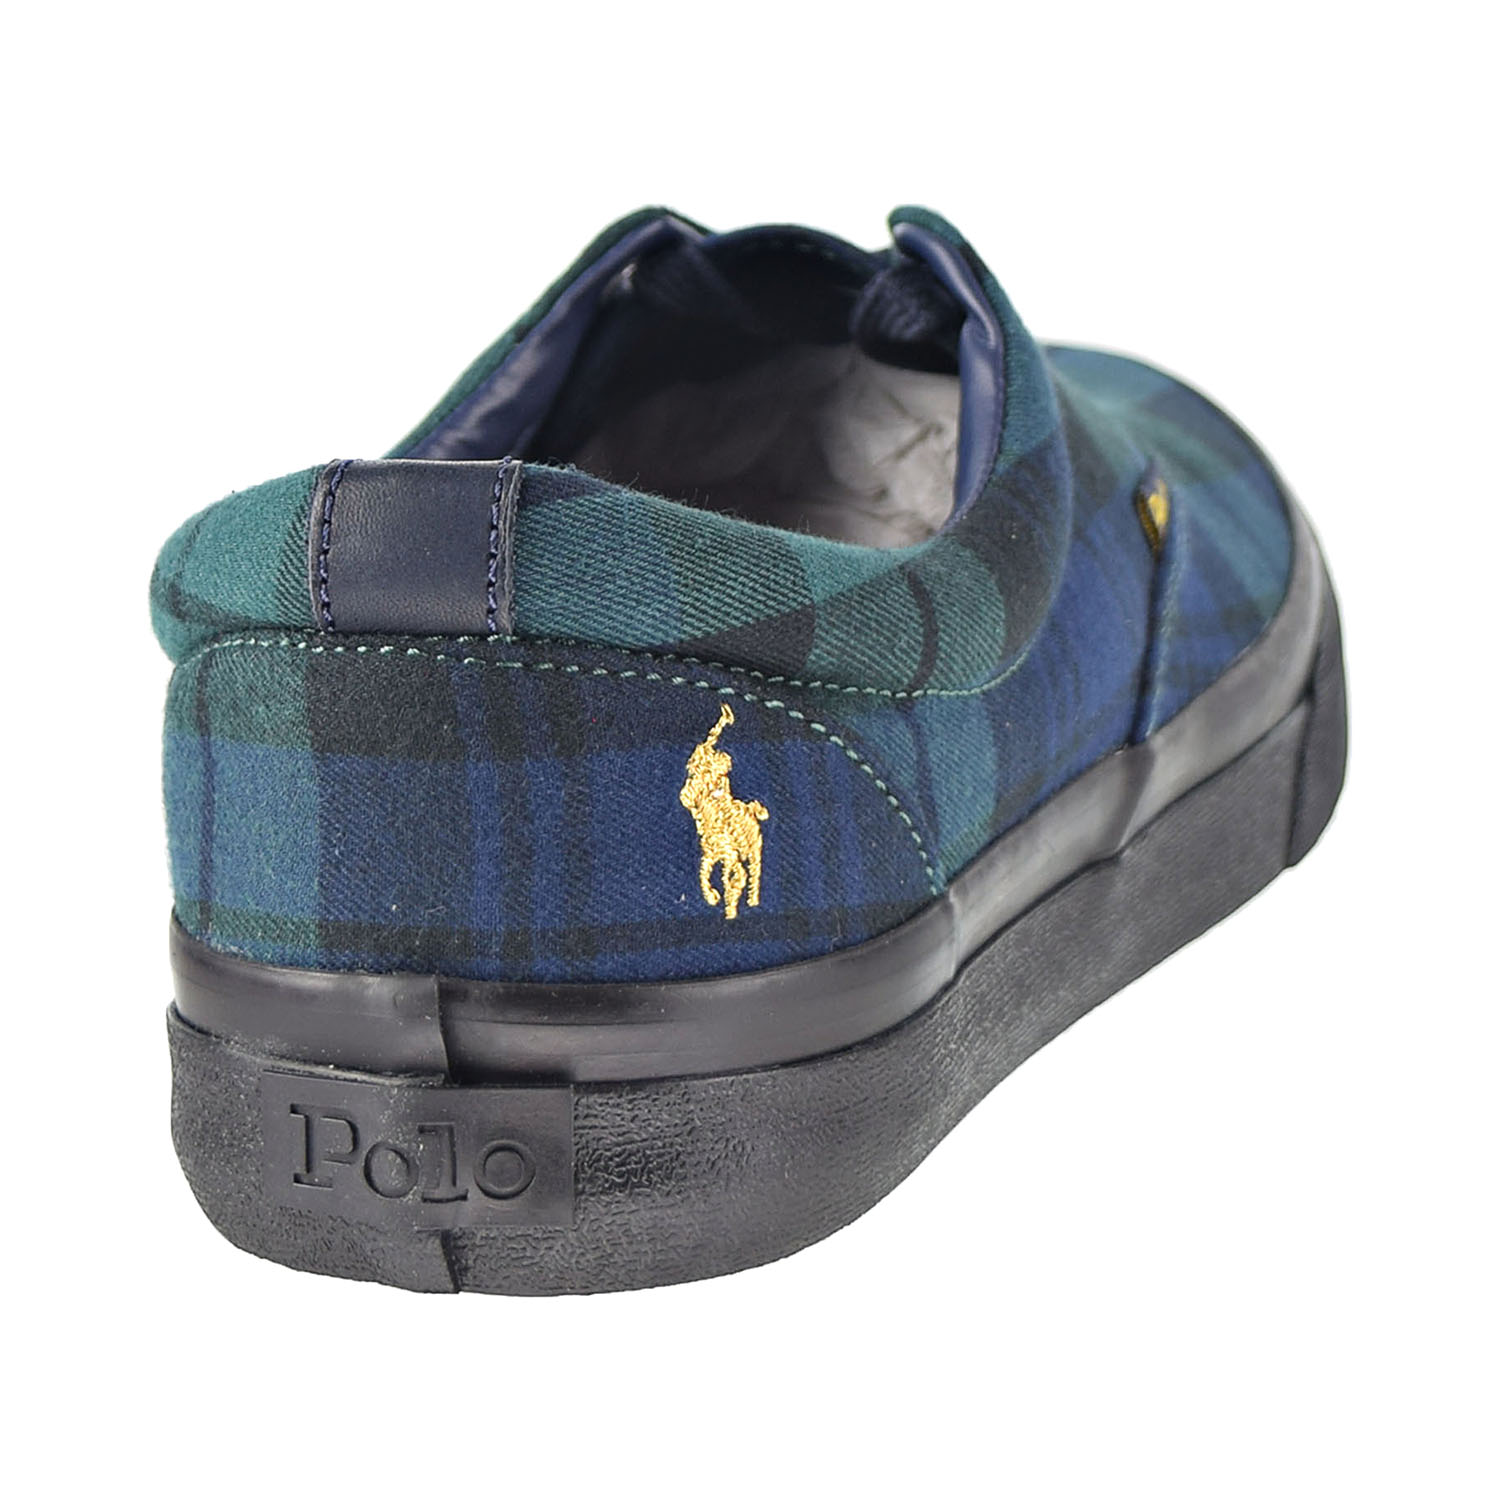 Polo Ralph Lauren Thorton Men's Shoes Black 816785212-001 - image 3 of 6